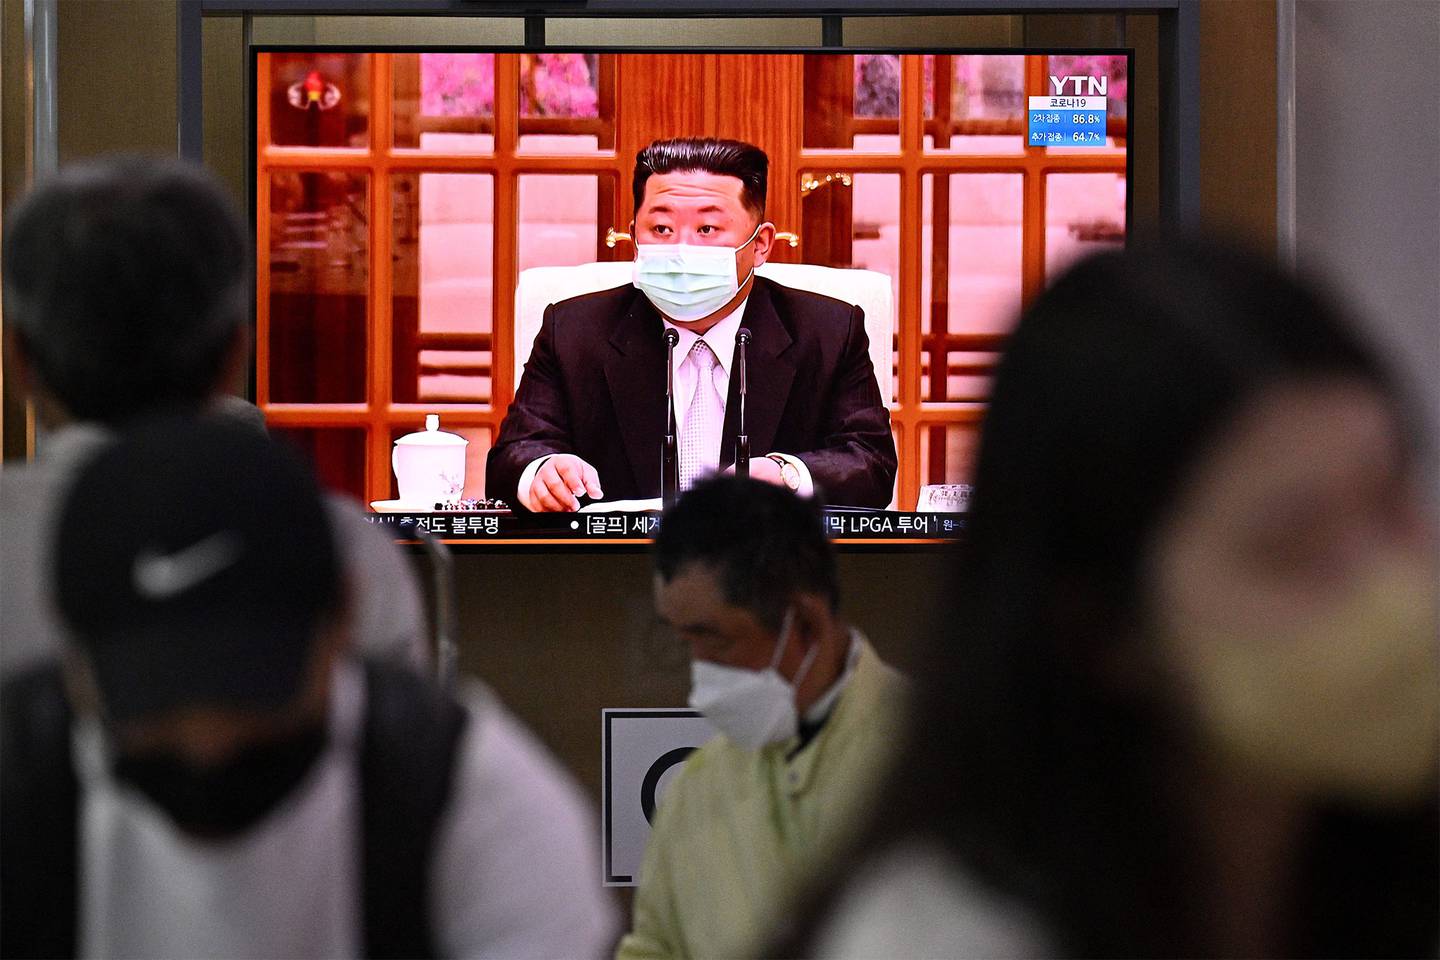 El líder de Corea del Norte, Kim Jong Un, apareció en televisión con una mascarilla el 12 de mayo.Fotógrafo: Anthony Wallace/AFP/Getty Images